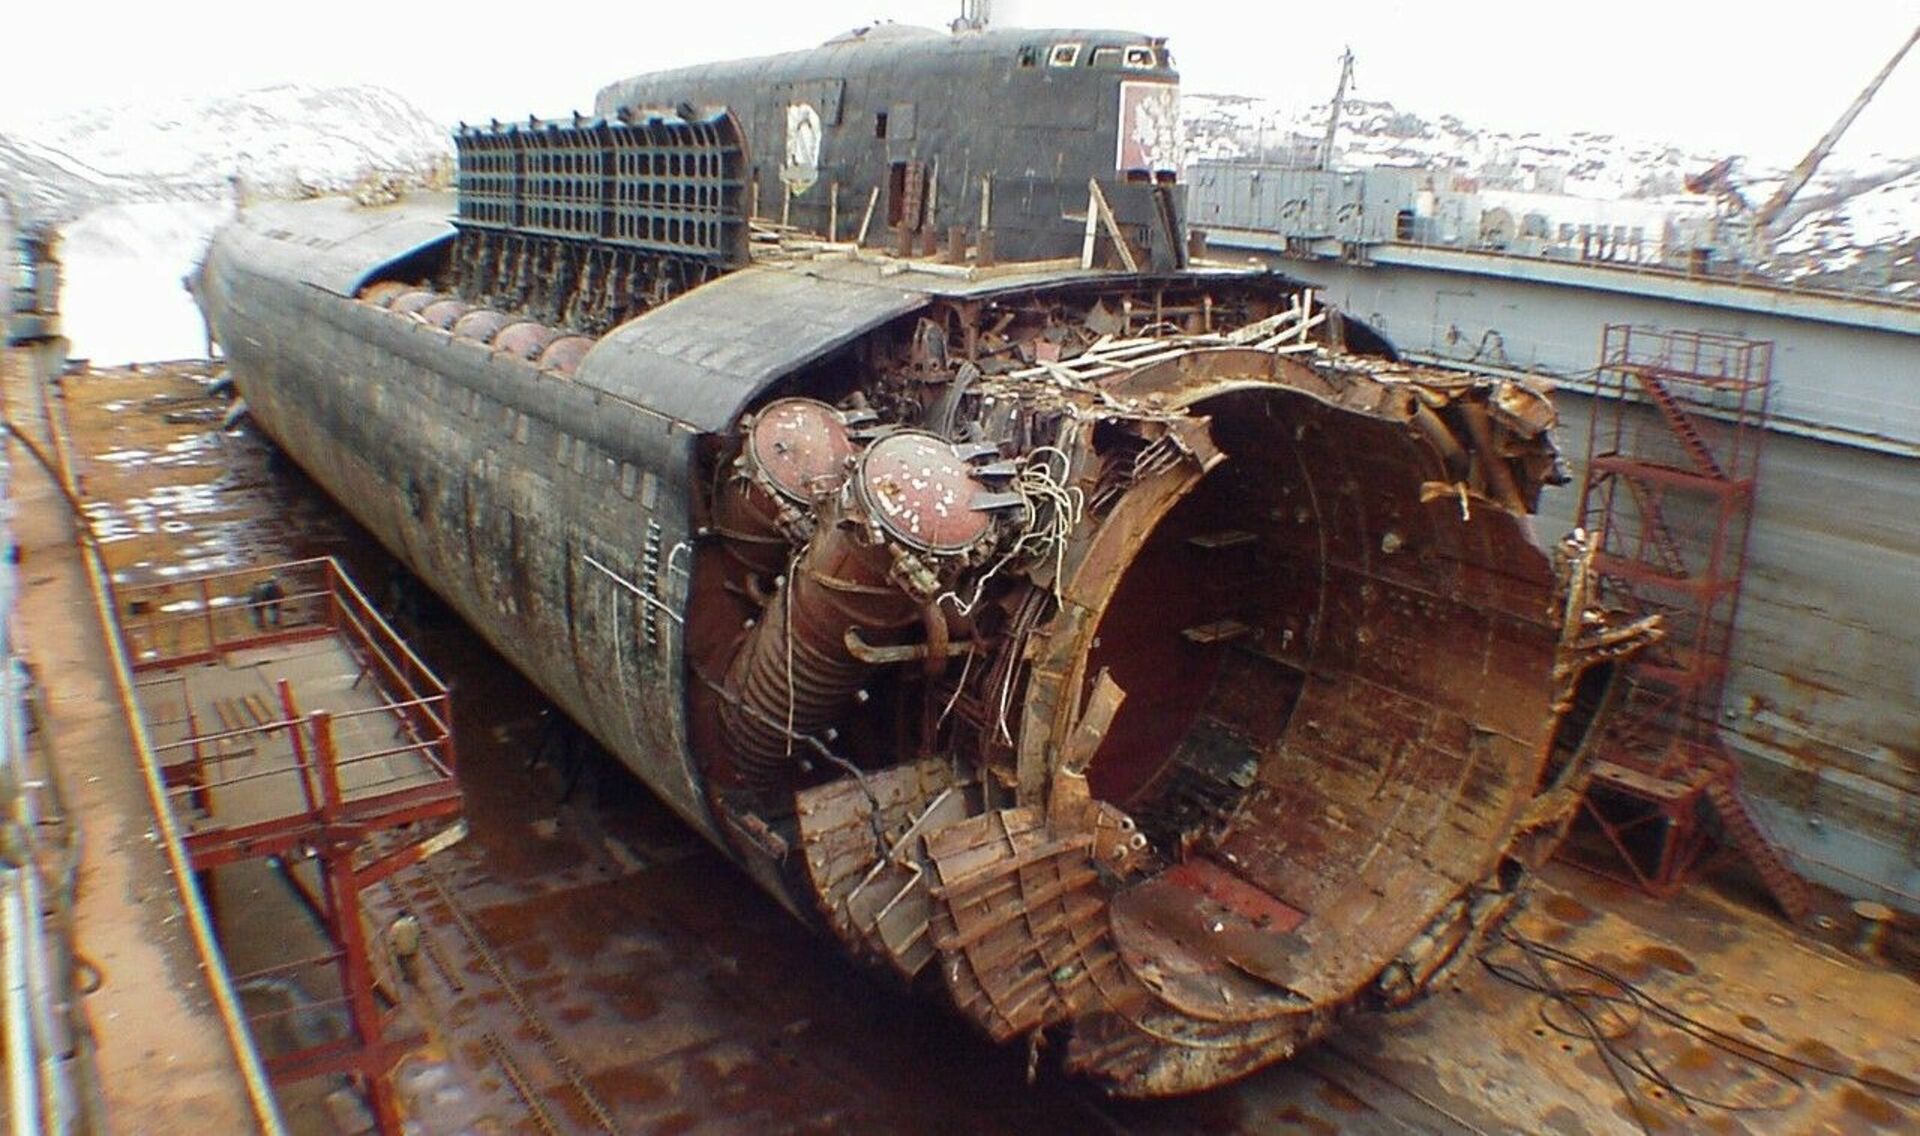 Курск субмарина в мутной воде. К-141 «Курск». Подводная лодка к-141 «Курск». Гибель атомной подводной лодки Курск 12 августа 2000 года. Атомная подводная лодка Курск.